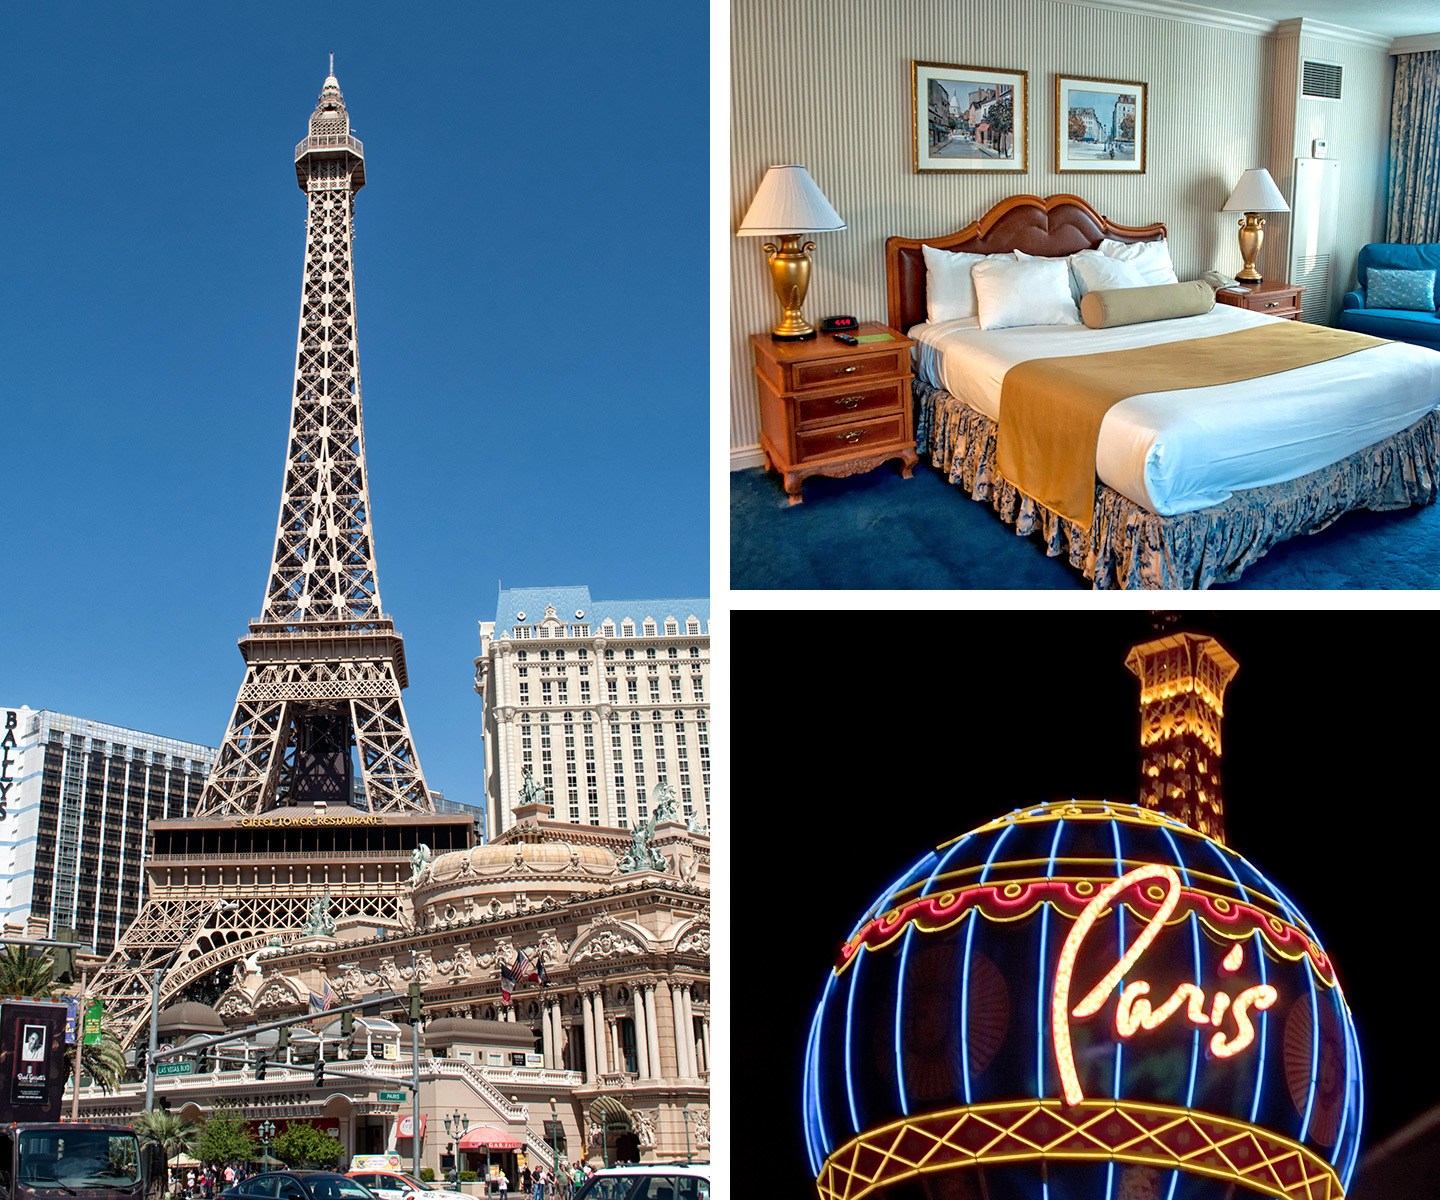 Paris Las Vegas hotel and casino on the Las Vegas Strip